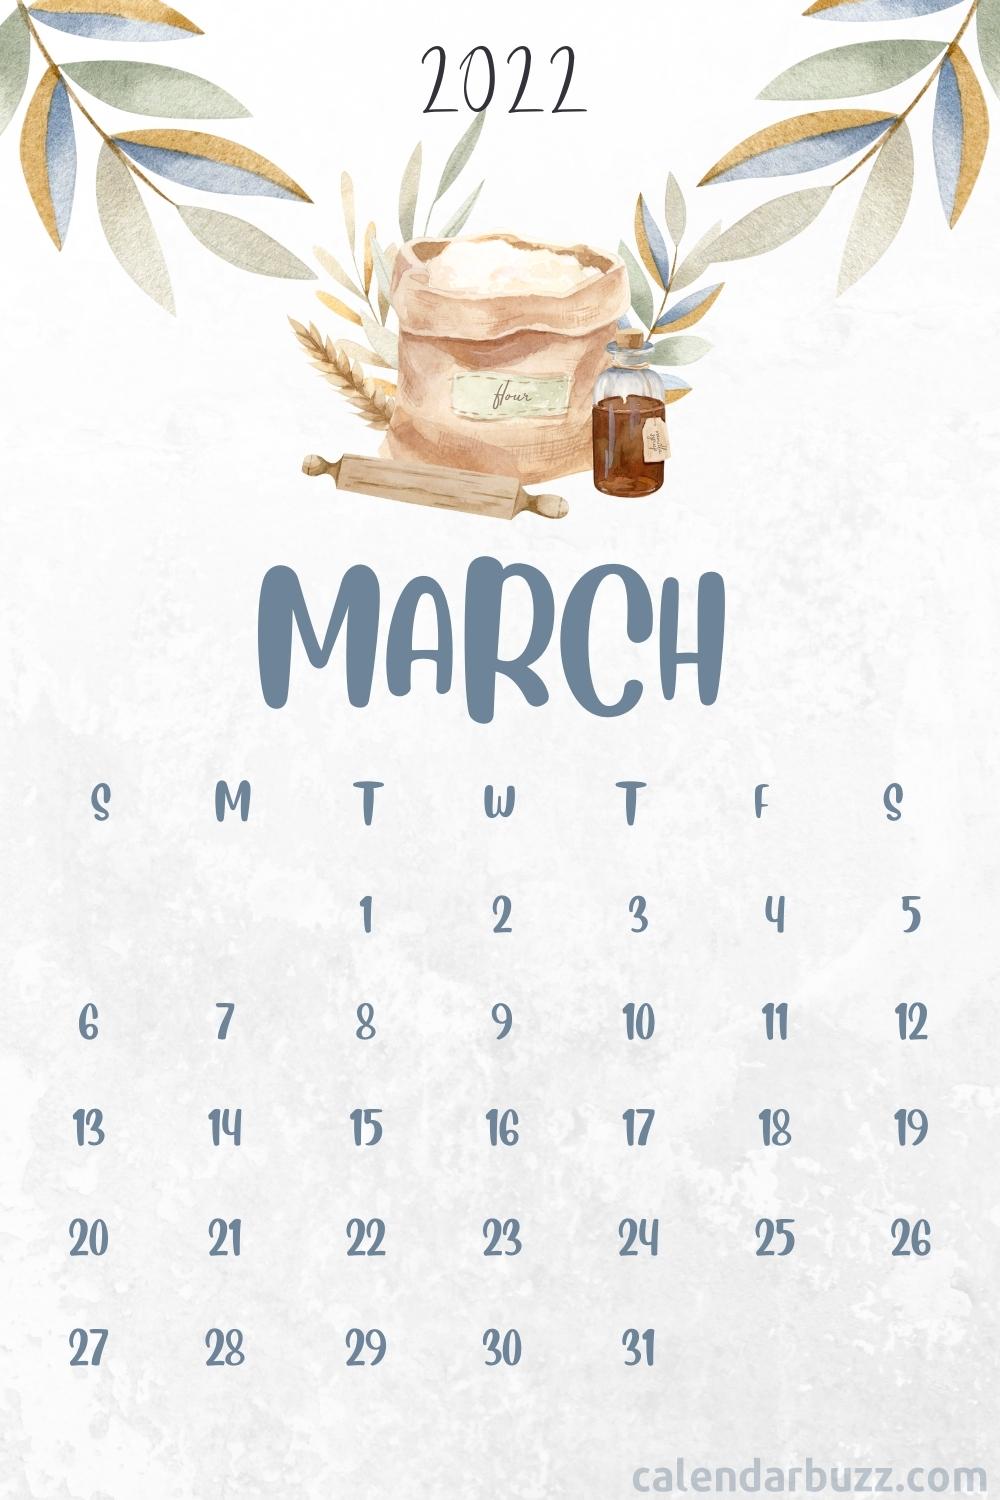 Gatech Calendar 2022 Calendar 2022 (@Calendar_2022) / Twitter